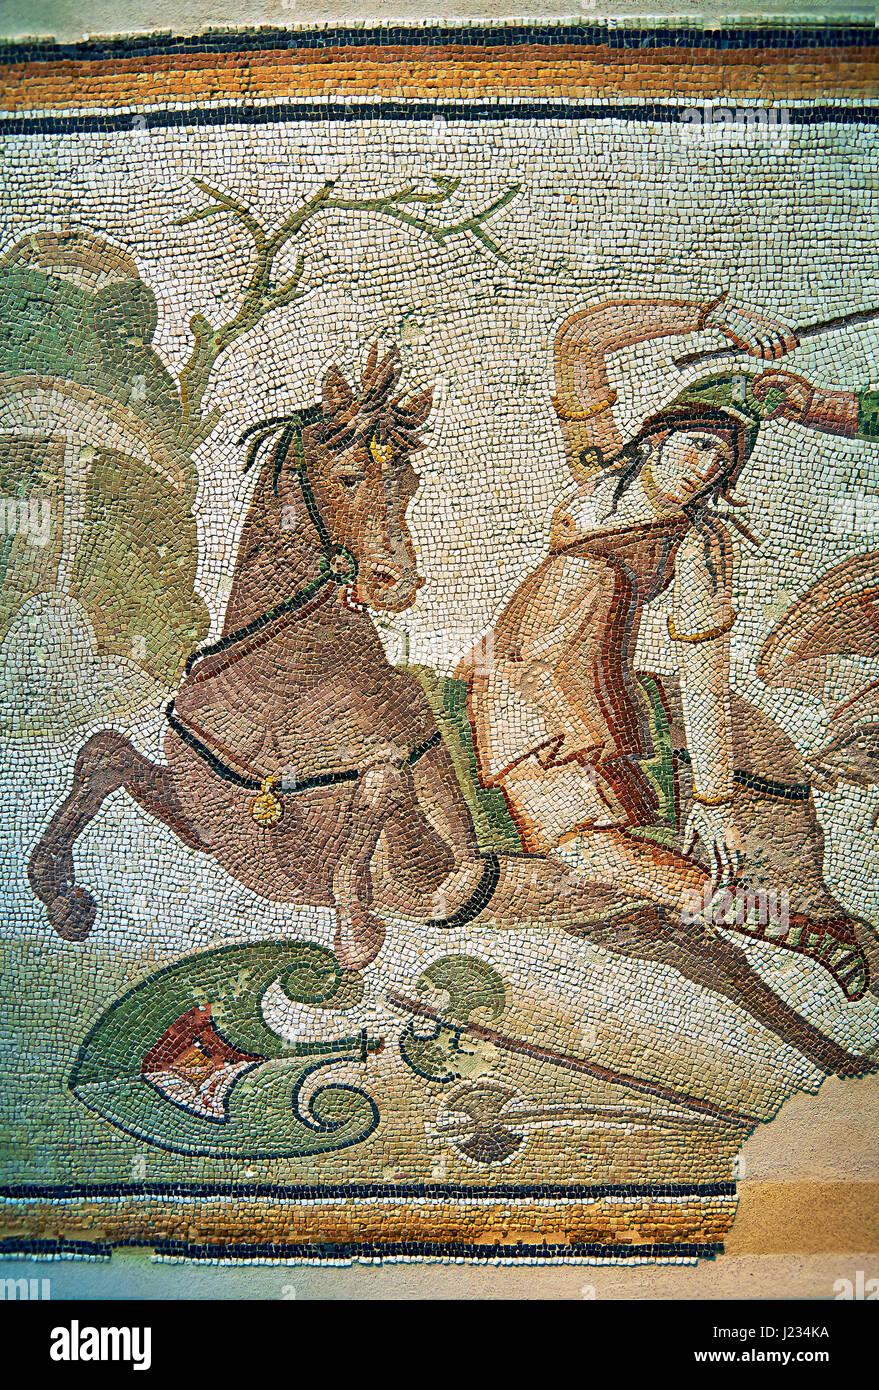 Eine Amazone zu Pferd kämpfen, von Daphne, einem Vorort von Antiochia, Antakya, Türkei, 4. Jahrhundert n. Chr. römische Mosaik. Marmorblöcke und Glaskubus einfügen Stockfoto